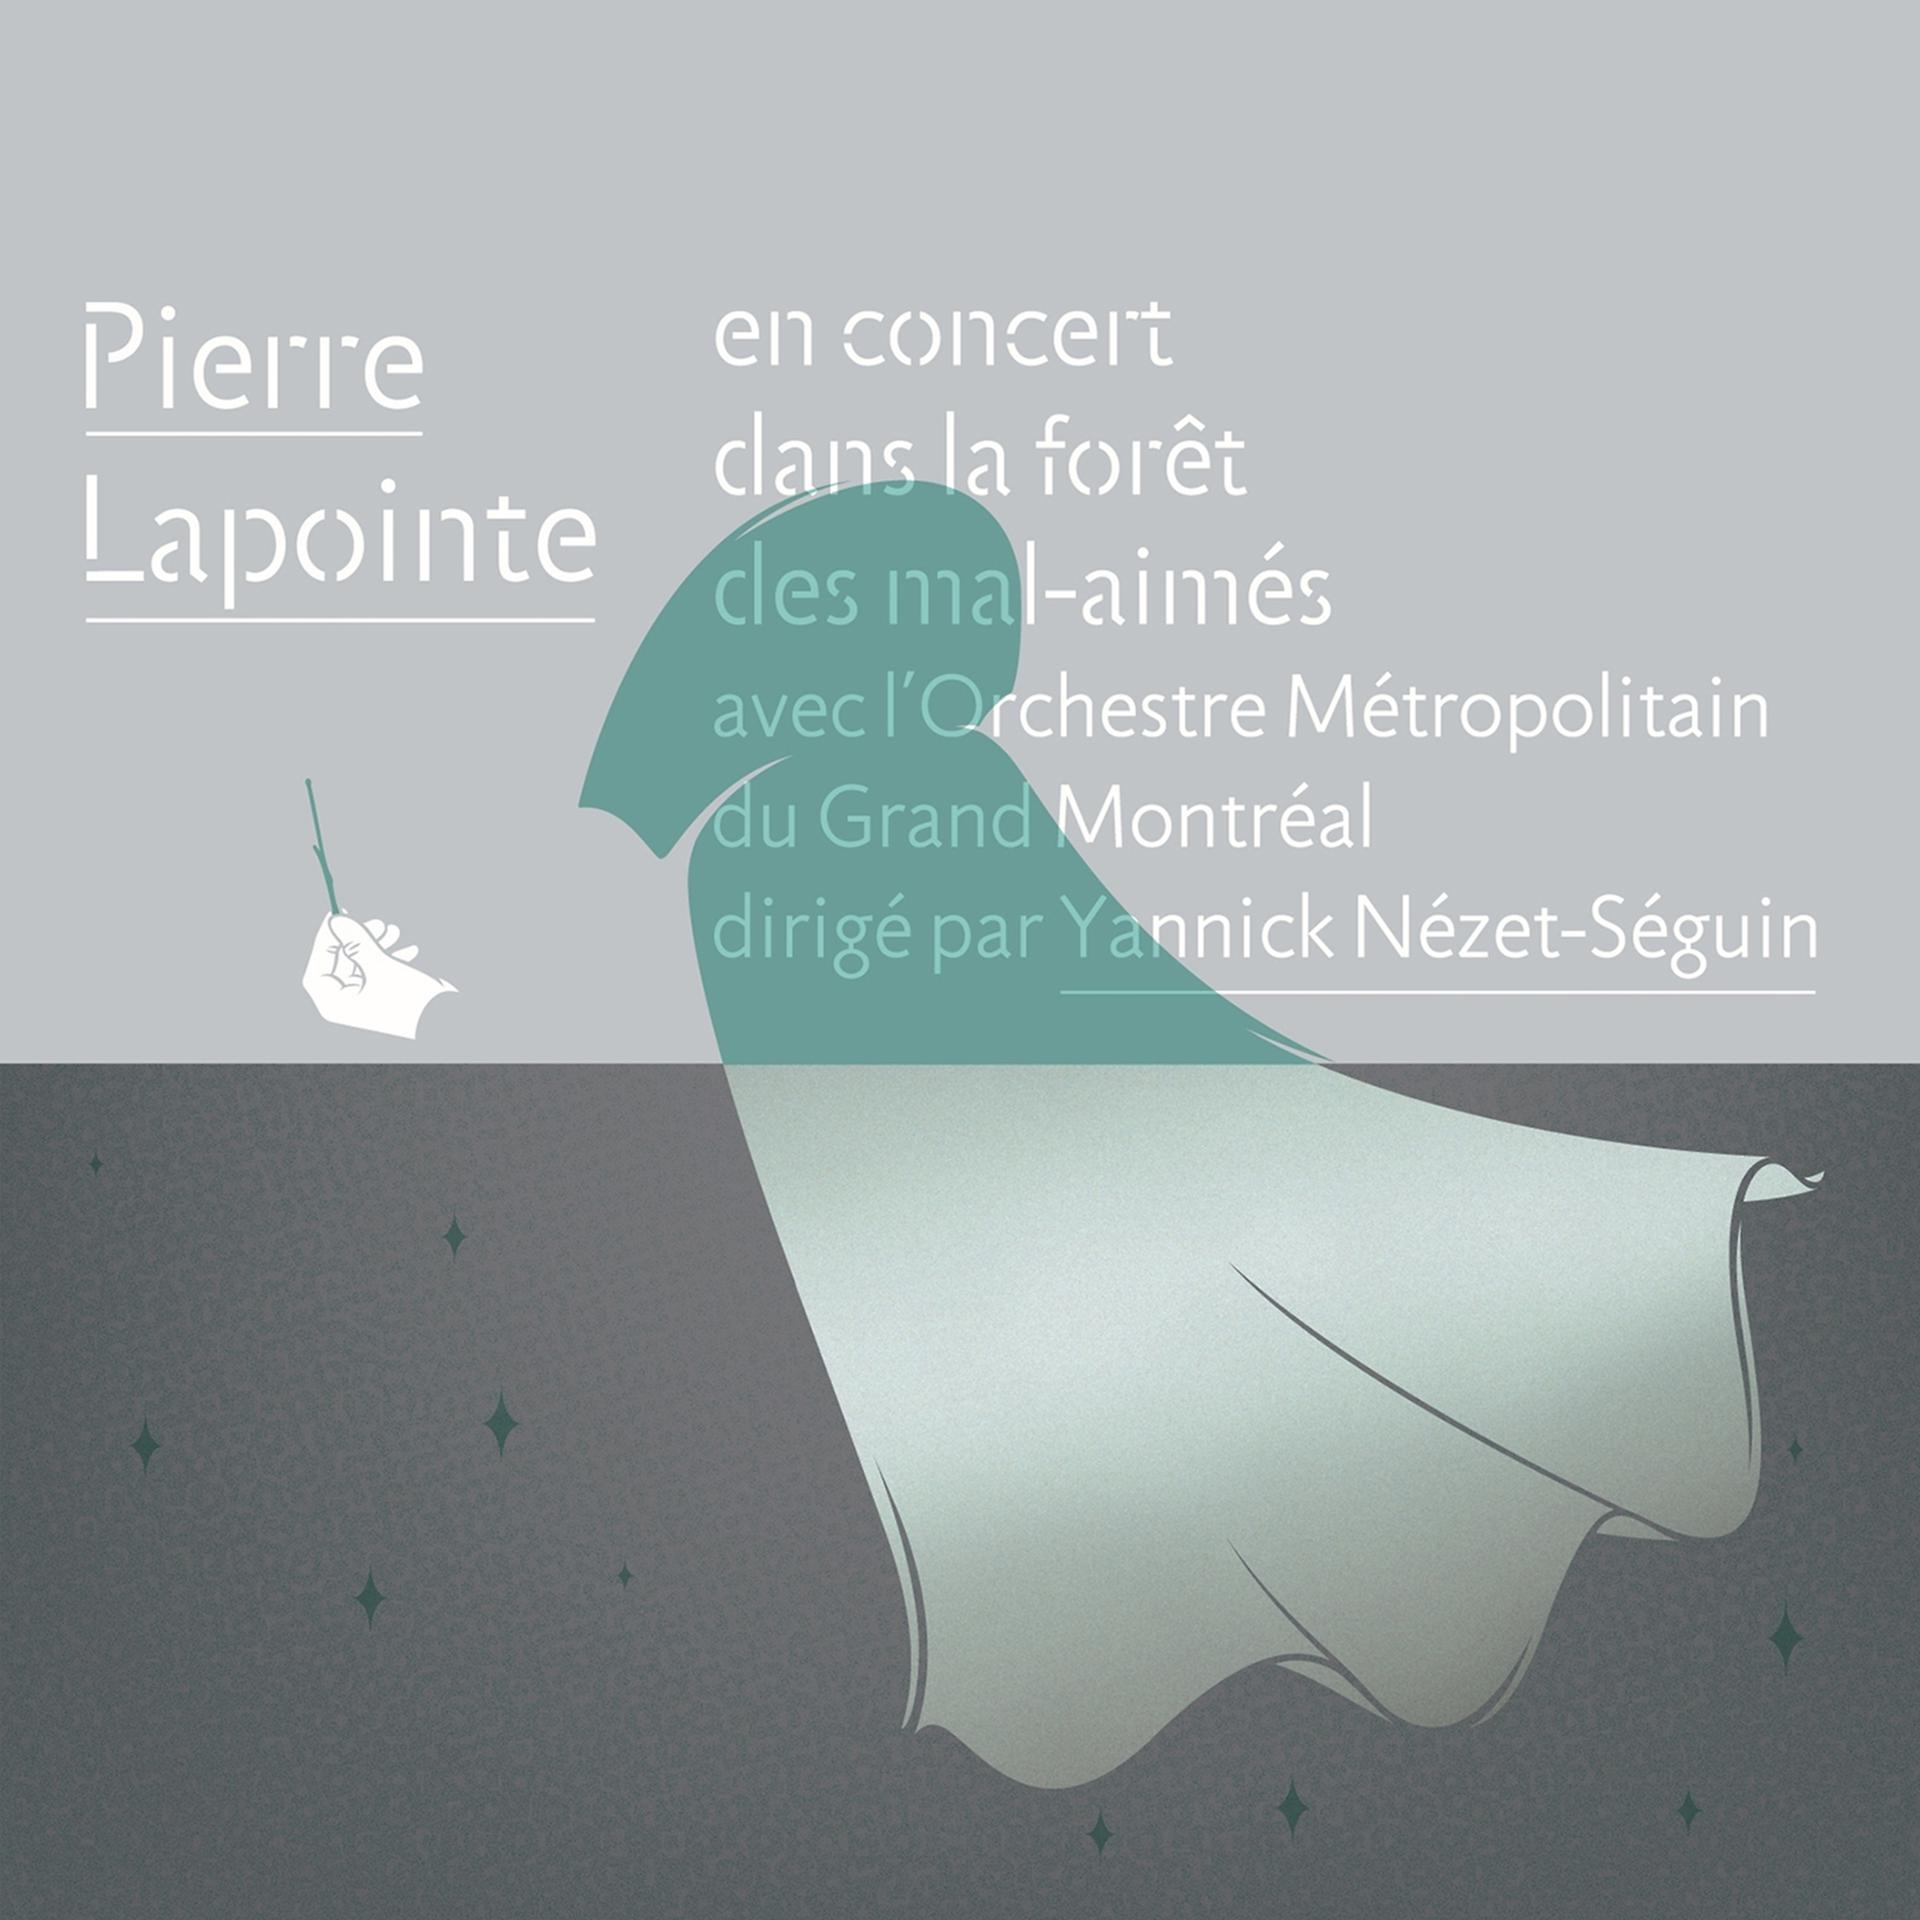 Постер альбома Pierre Lapointe en concert dans la forêt des mal-aimés avec l'Orchestre Métropolitain du Grand Montréal dirigé par Yannick Nézet-Séguin